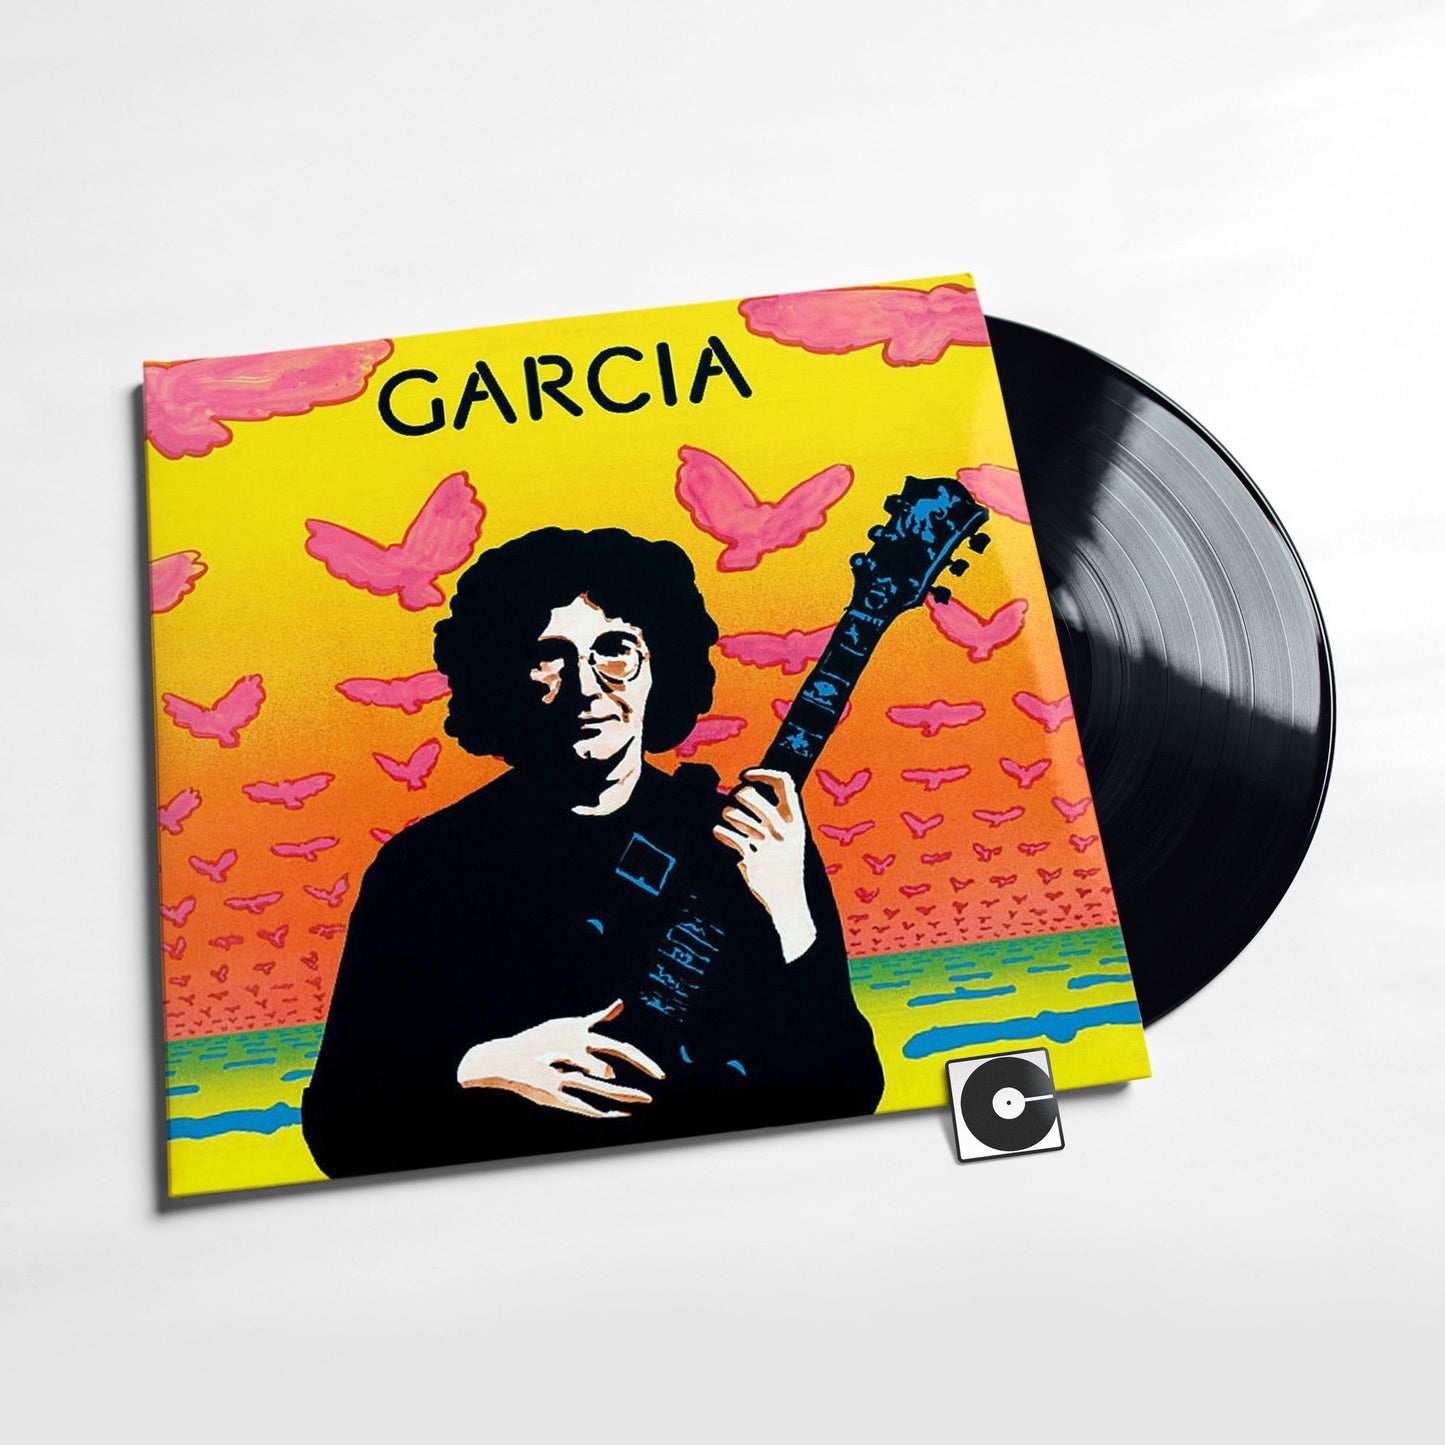 Jerry Garcia - "Garcia"